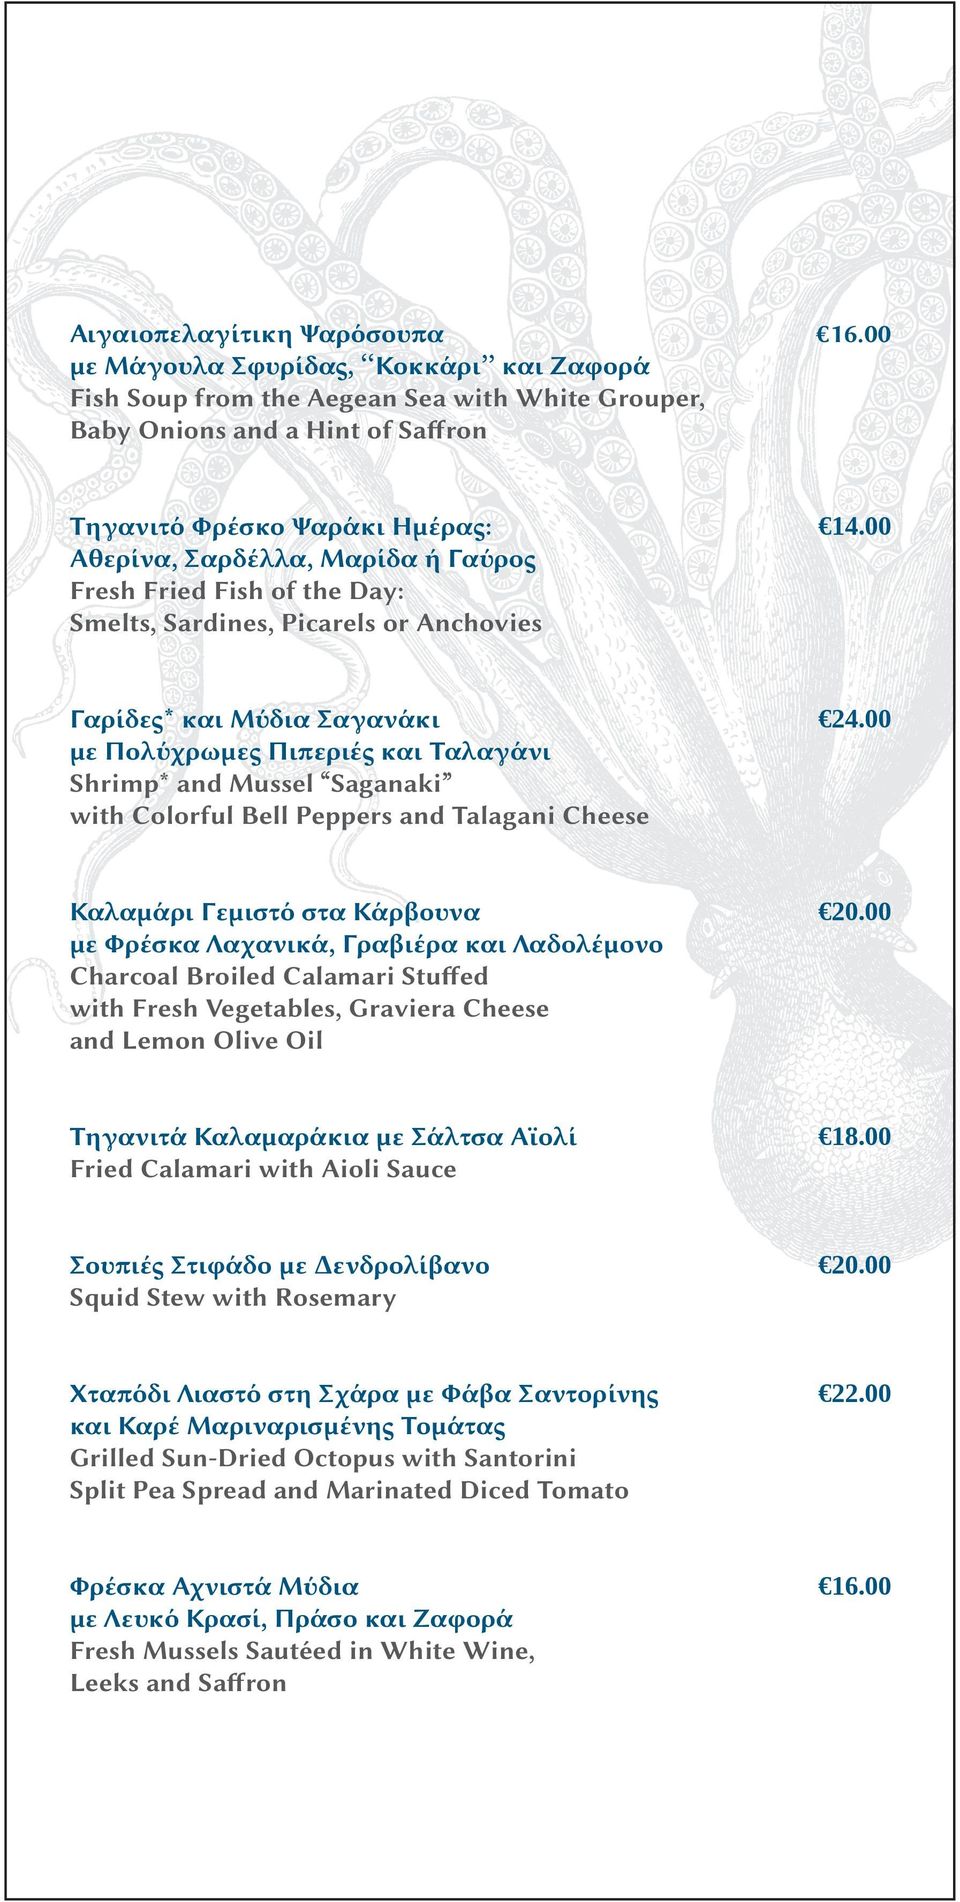 Ταλαγάνι Shrimp* and Mussel Saganaki with Colorful Bell Peppers and Talagani Cheese 24.